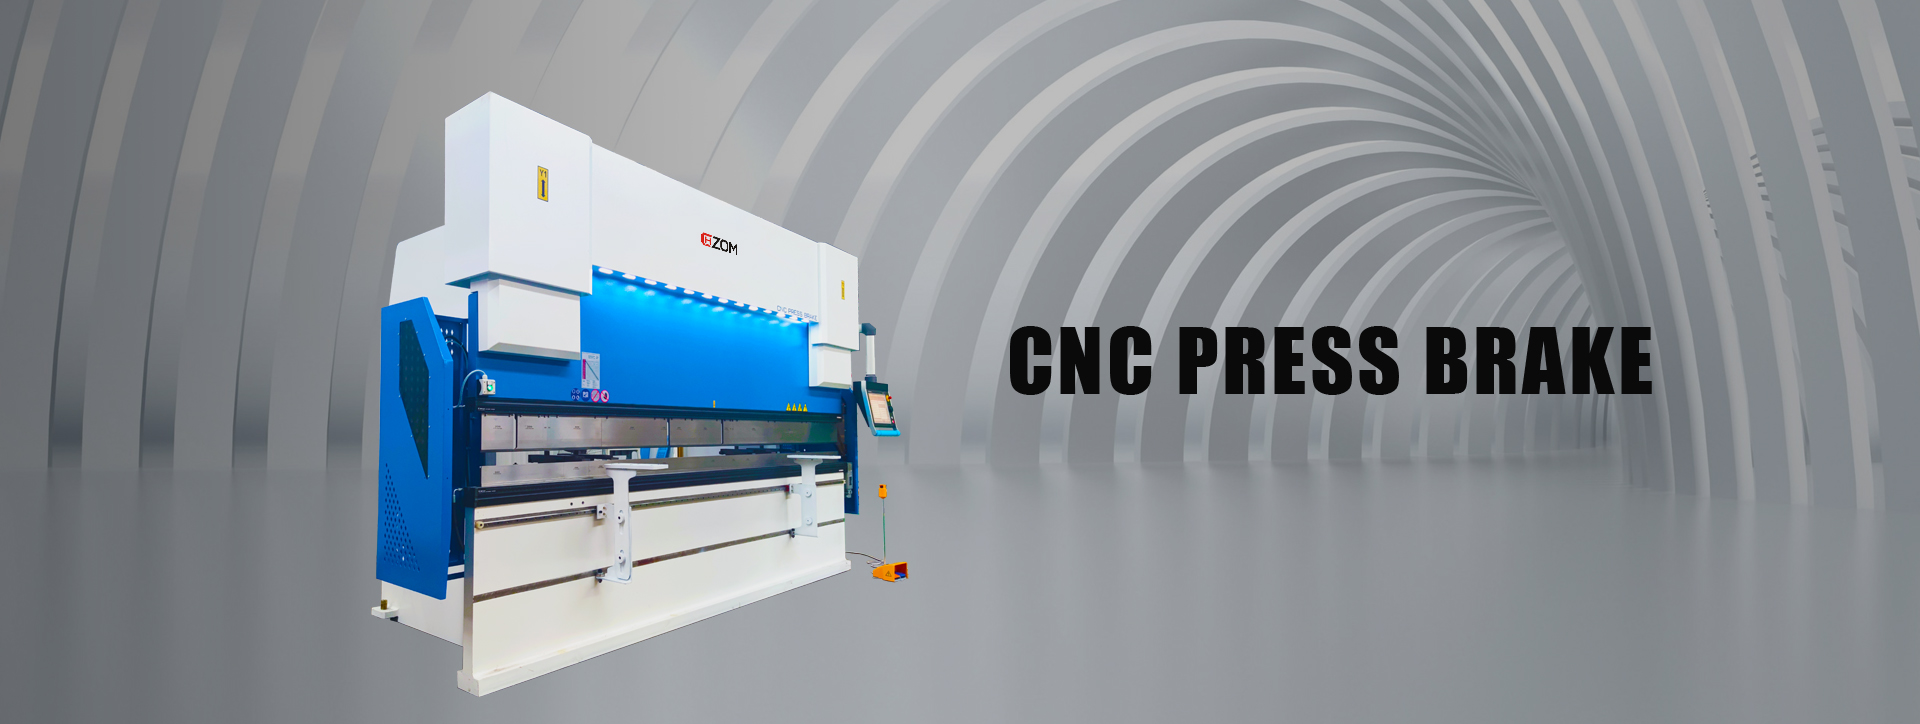 CNC PRESS BRAKE